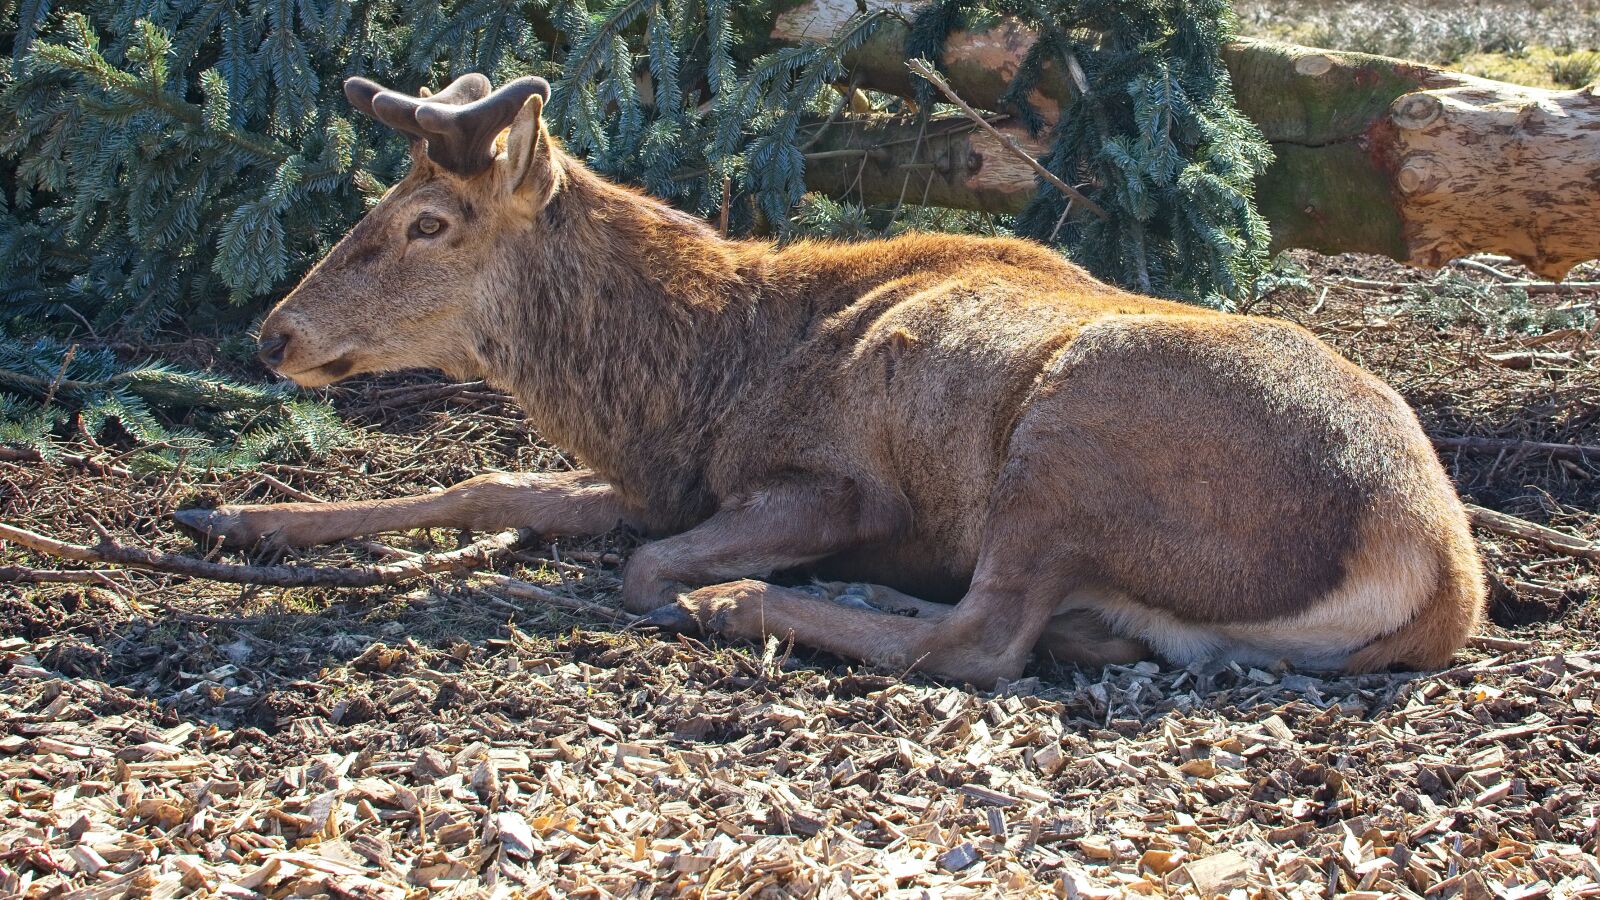 Nikon AF-S DX Nikkor 35mm F1.8G sample photo. Red deer, hirsch, animal photography